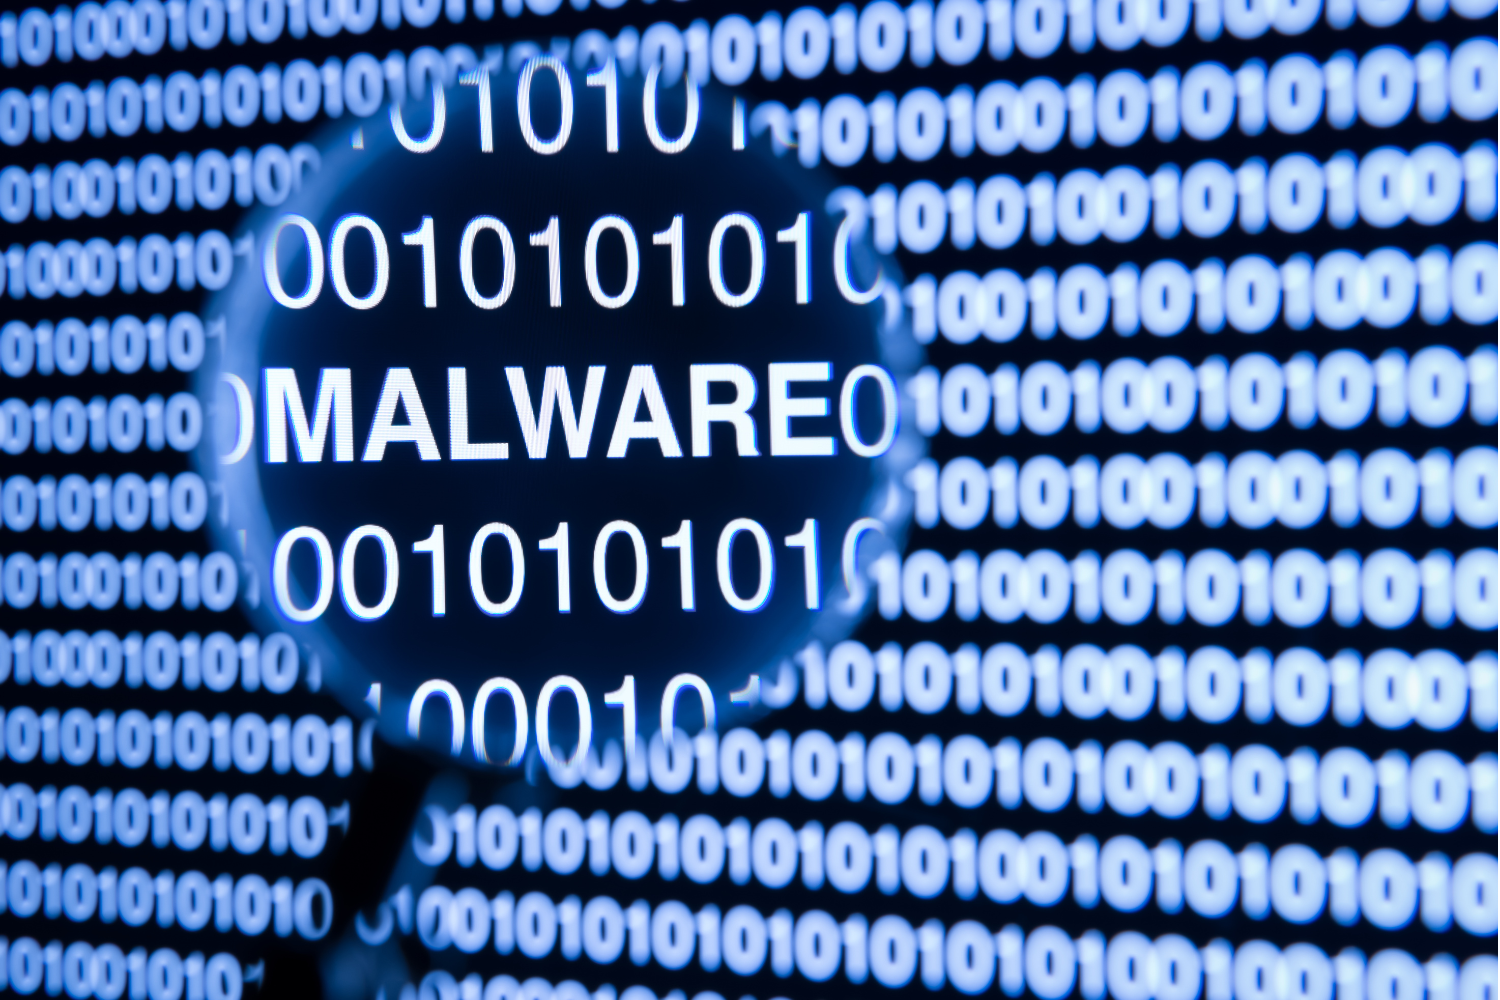 malware escondido no linux